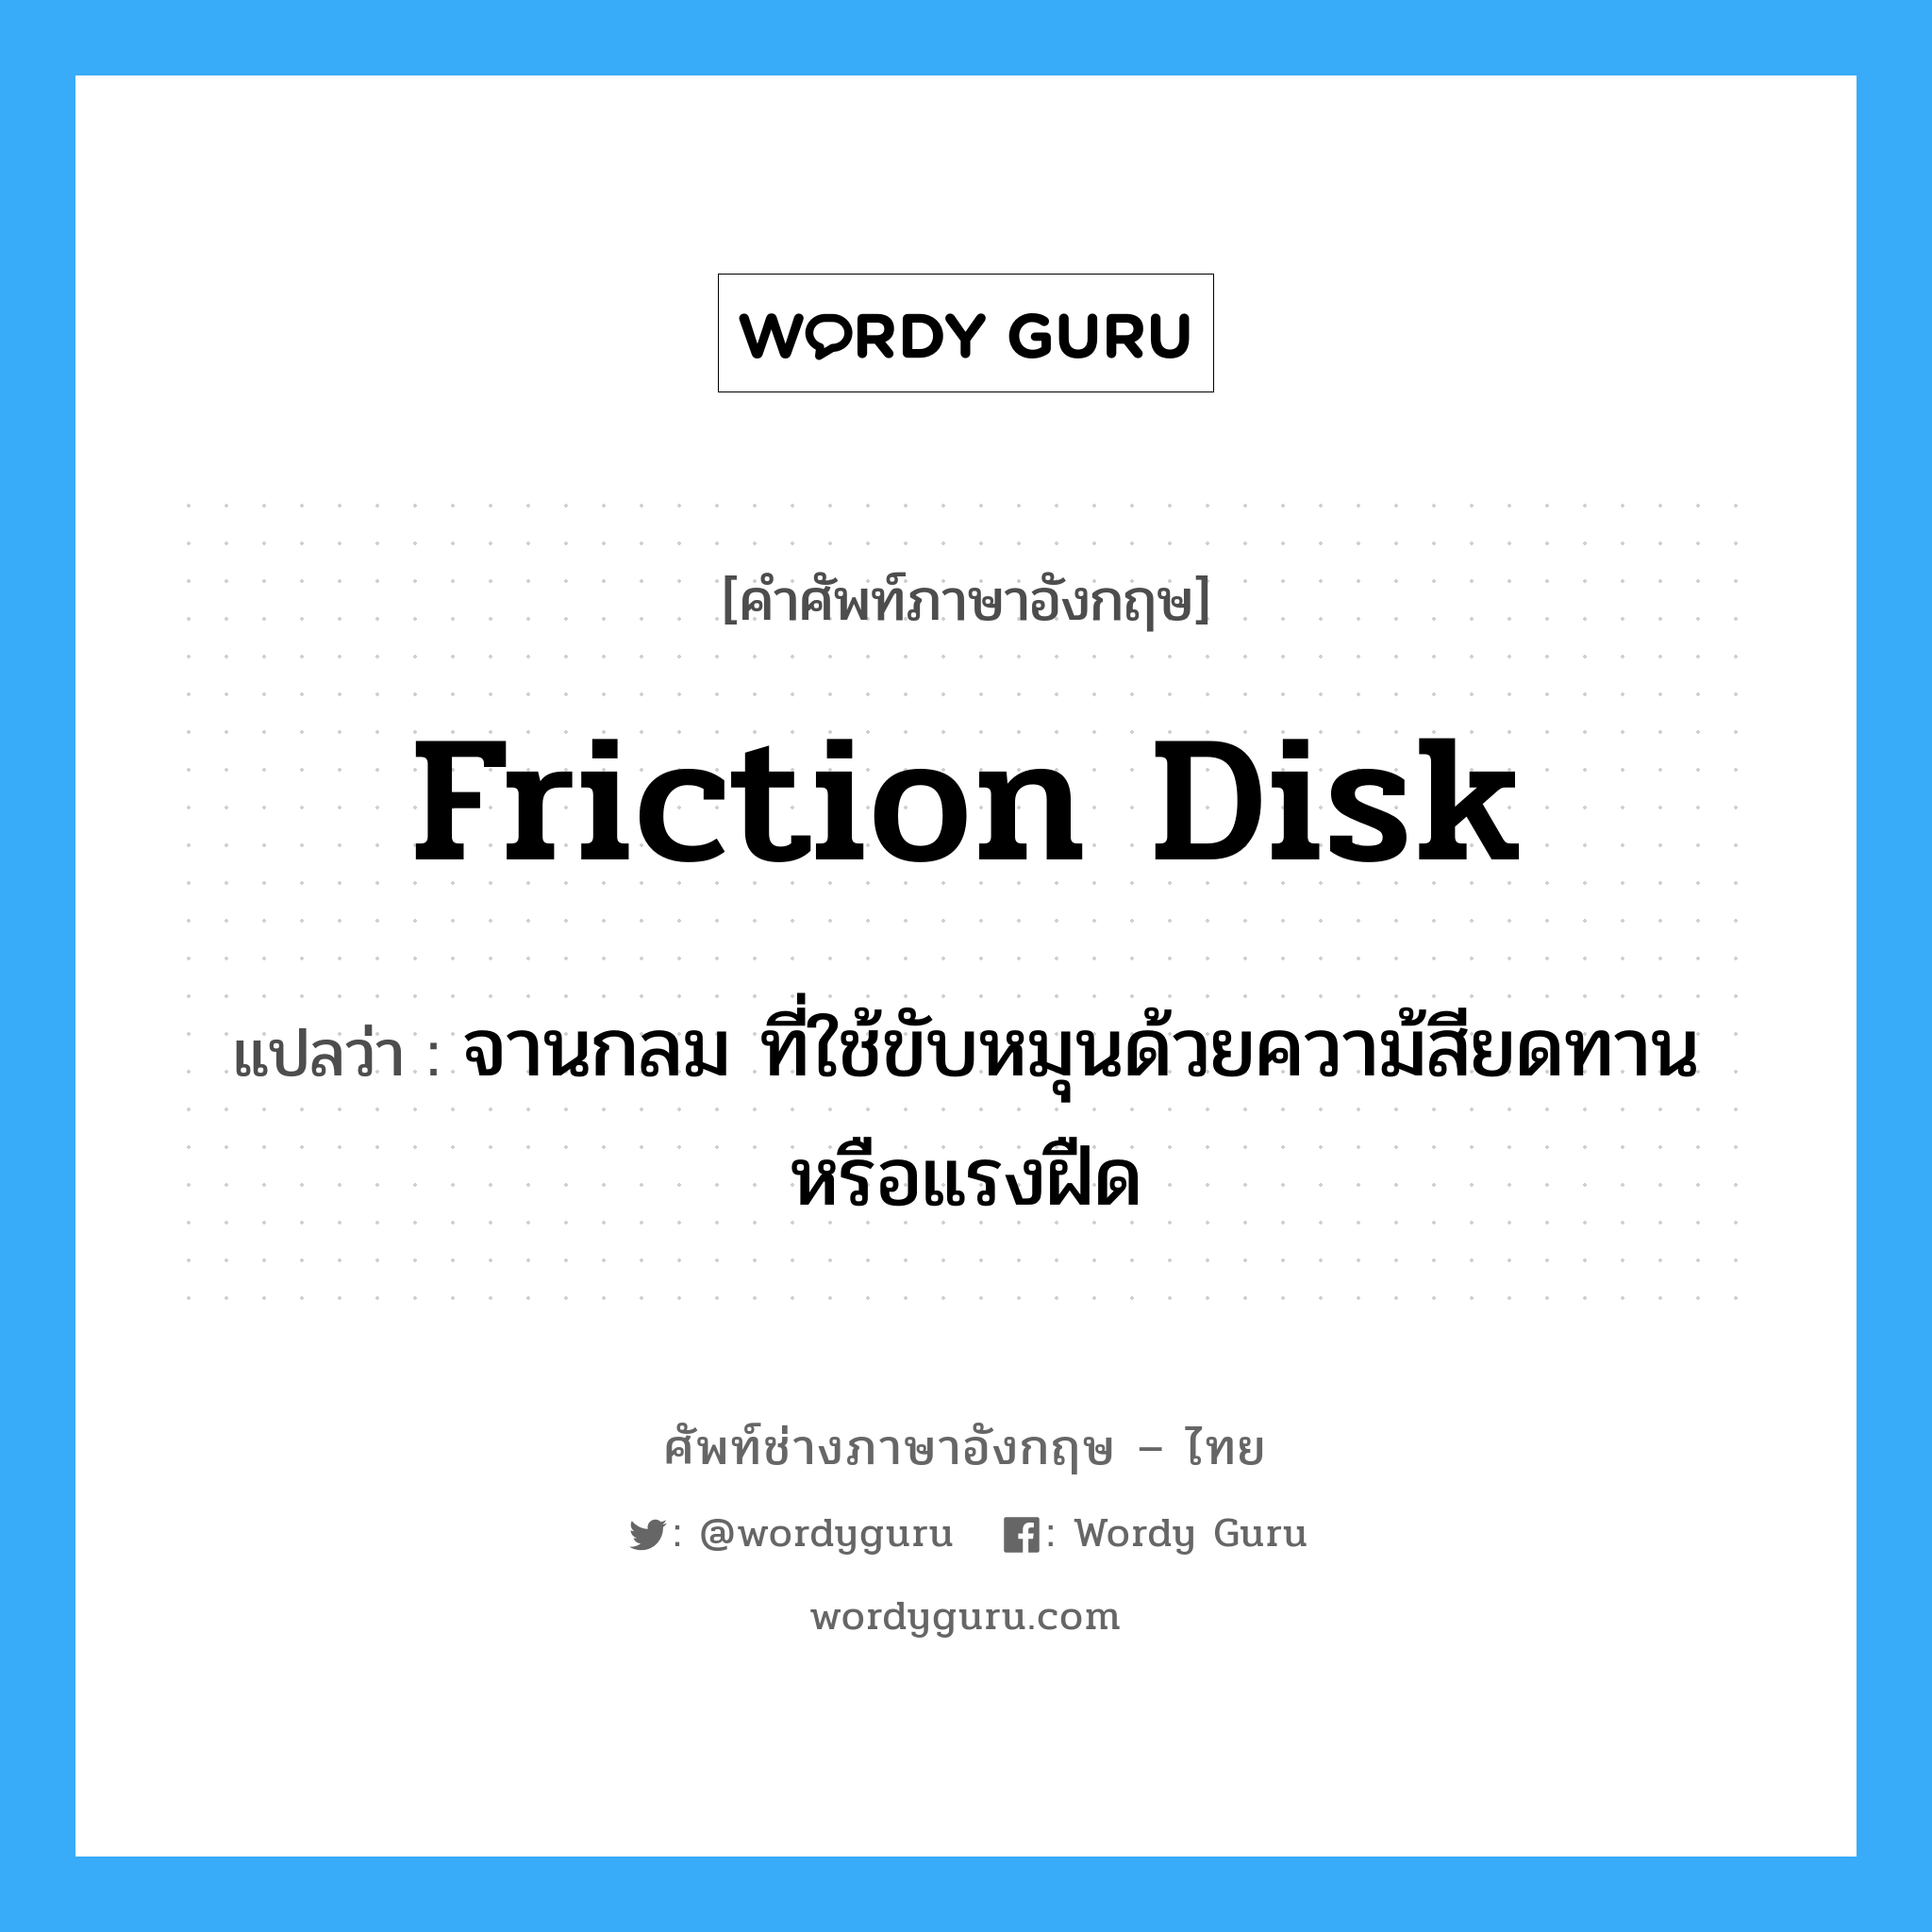 friction disk แปลว่า?, คำศัพท์ช่างภาษาอังกฤษ - ไทย friction disk คำศัพท์ภาษาอังกฤษ friction disk แปลว่า จานกลม ที่ใช้ขับหมุนด้วยความ้สียดทานหรือแรงฝืด